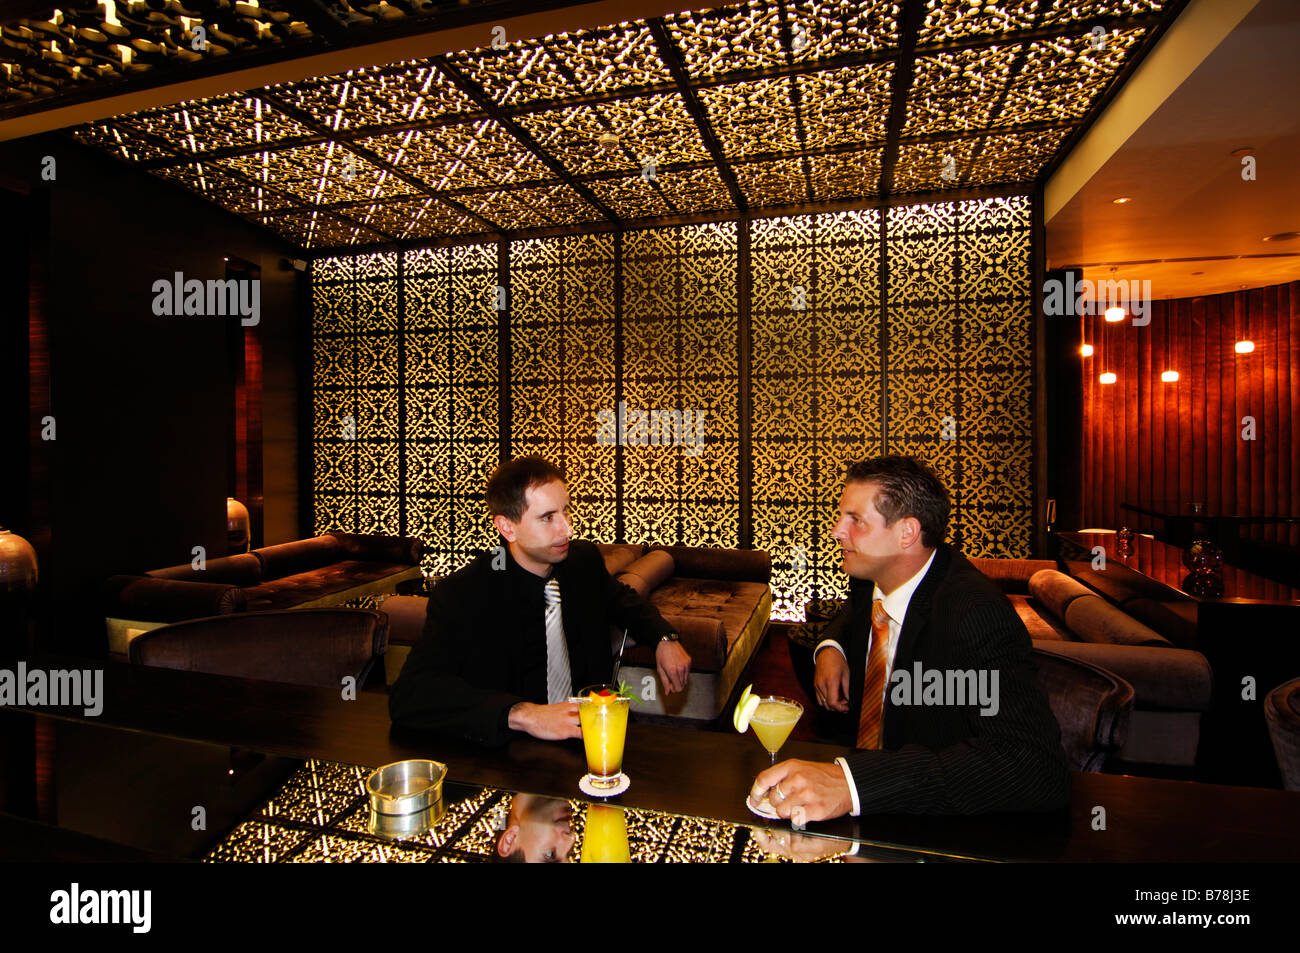 Les clients de nuit à l'hôtel à Kempinski Mall of the Emirates à Dubaï, Émirats arabes unis, ÉMIRATS ARABES UNIS, Moyen Orient Banque D'Images